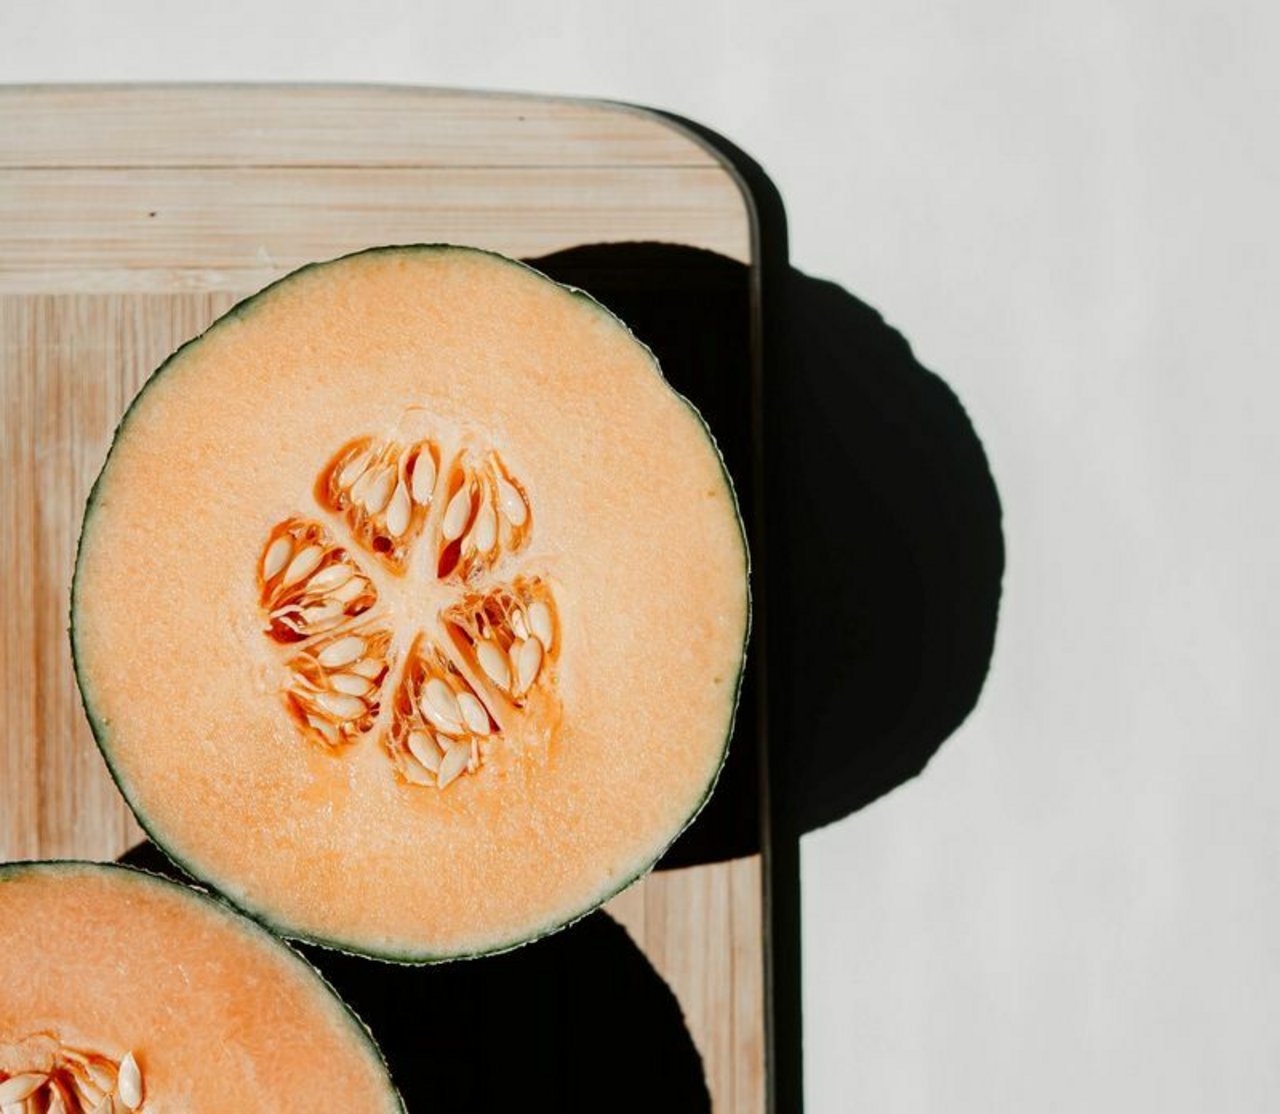 Die Melone wird oft als Frucht betrachtet, ist jedoch ein Gemüse. (Bild Unsplash)